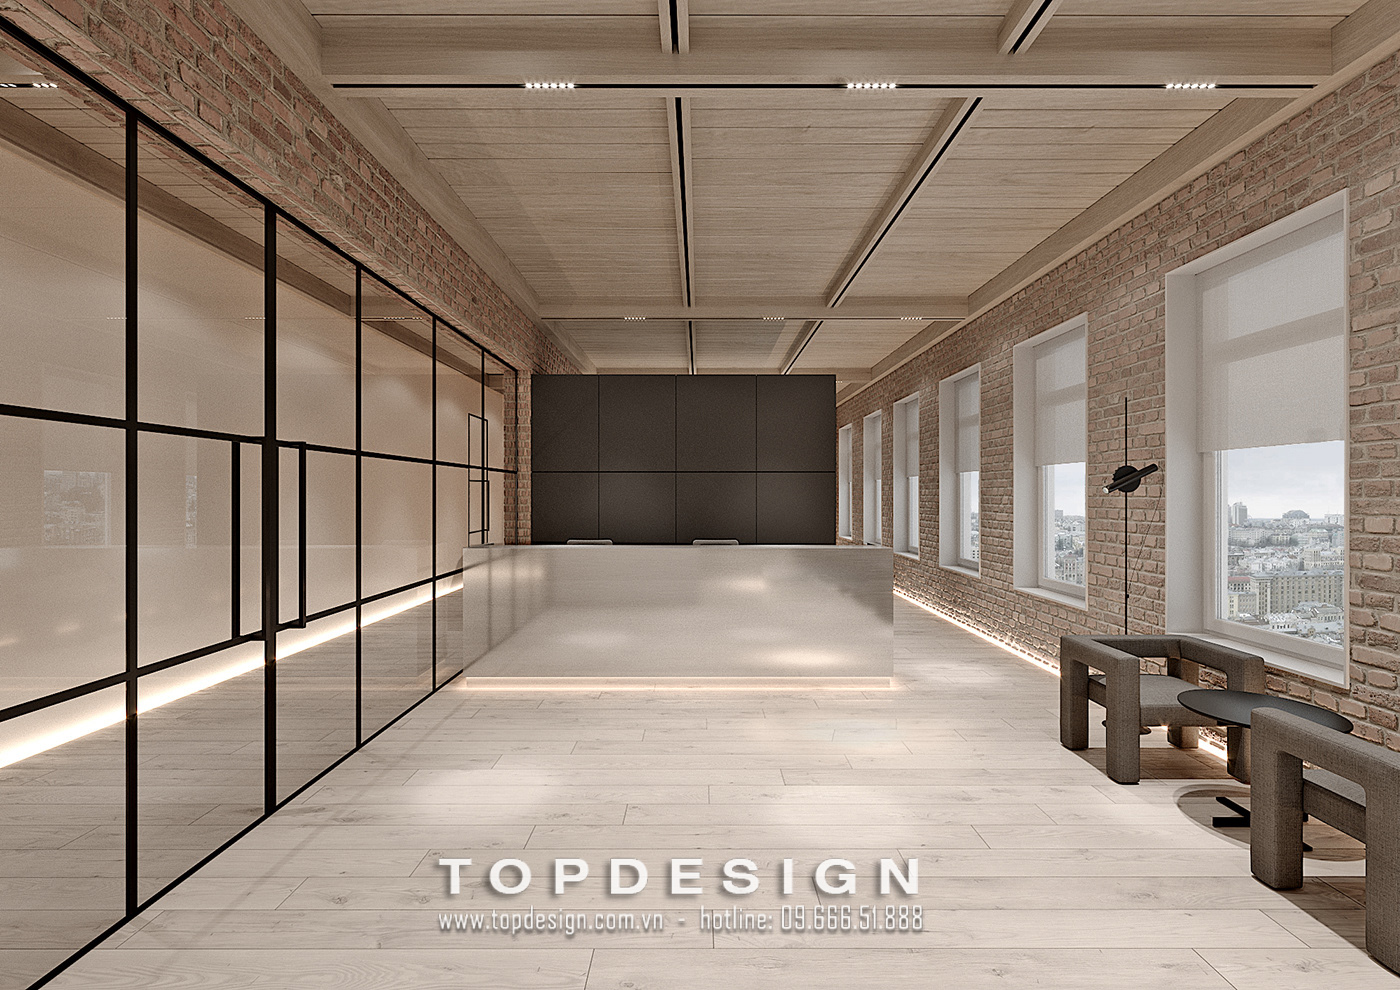 9. Thiết kế nội thất văn phòng Capital Place hiện đại, tinh tế_TOPDESIGN